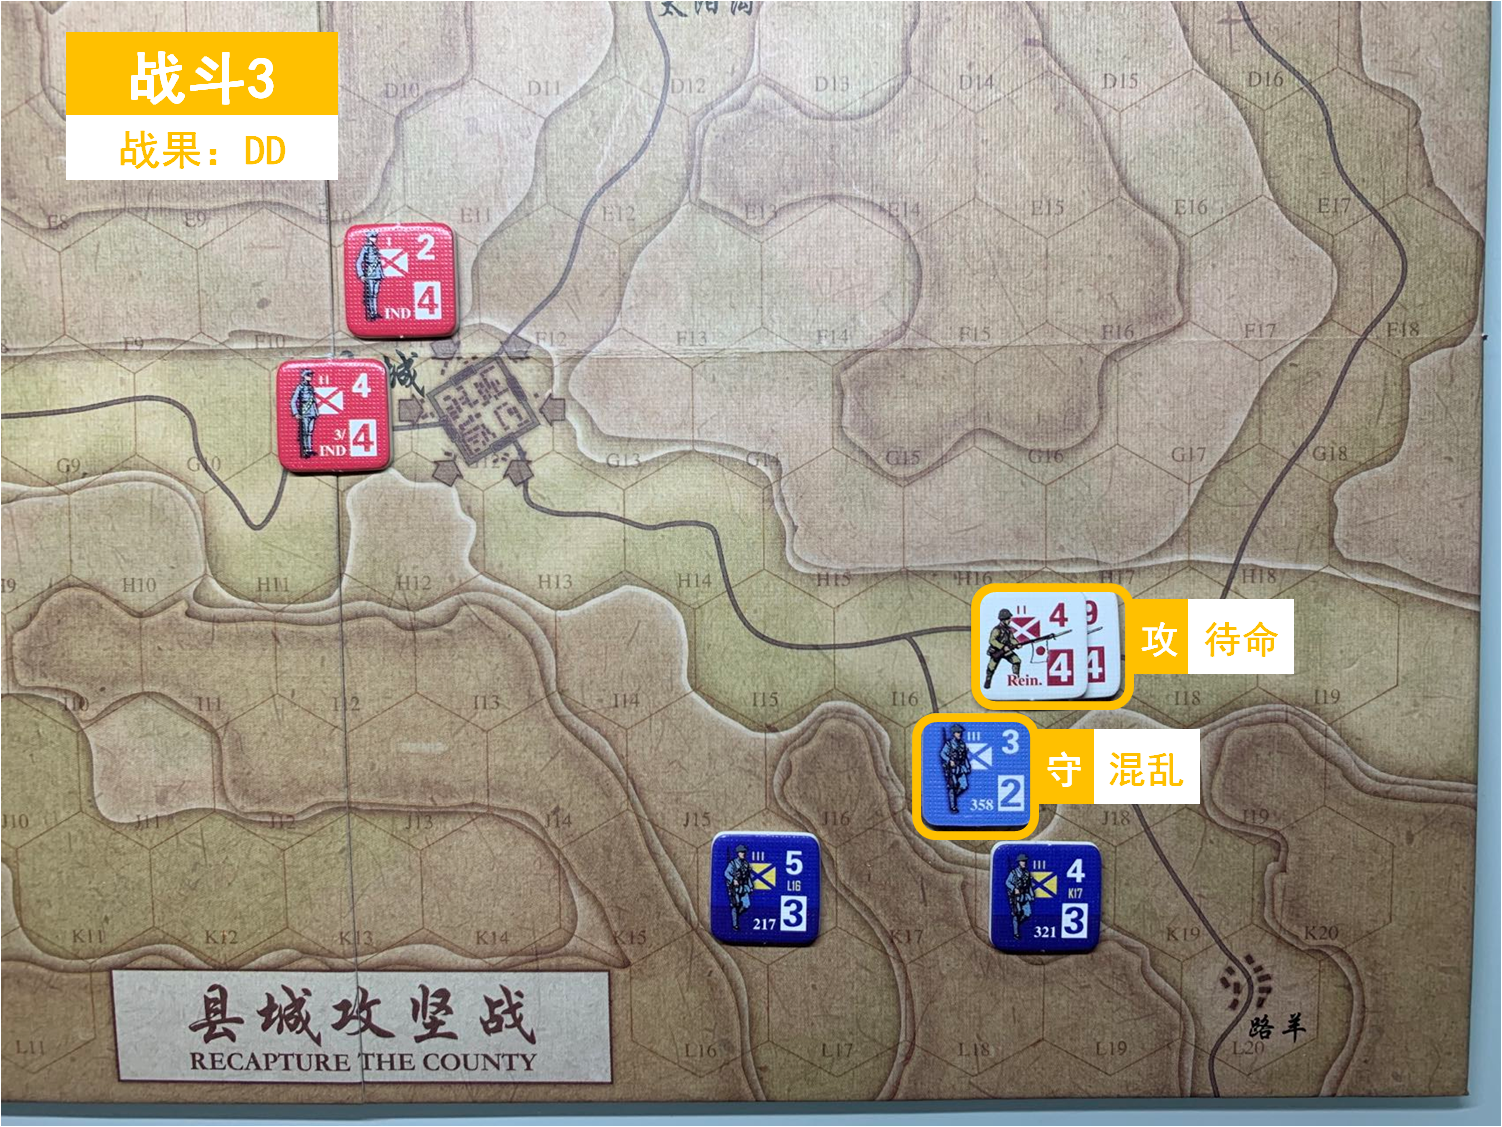 第二回合 日方战斗阶段 战斗3 战斗结果